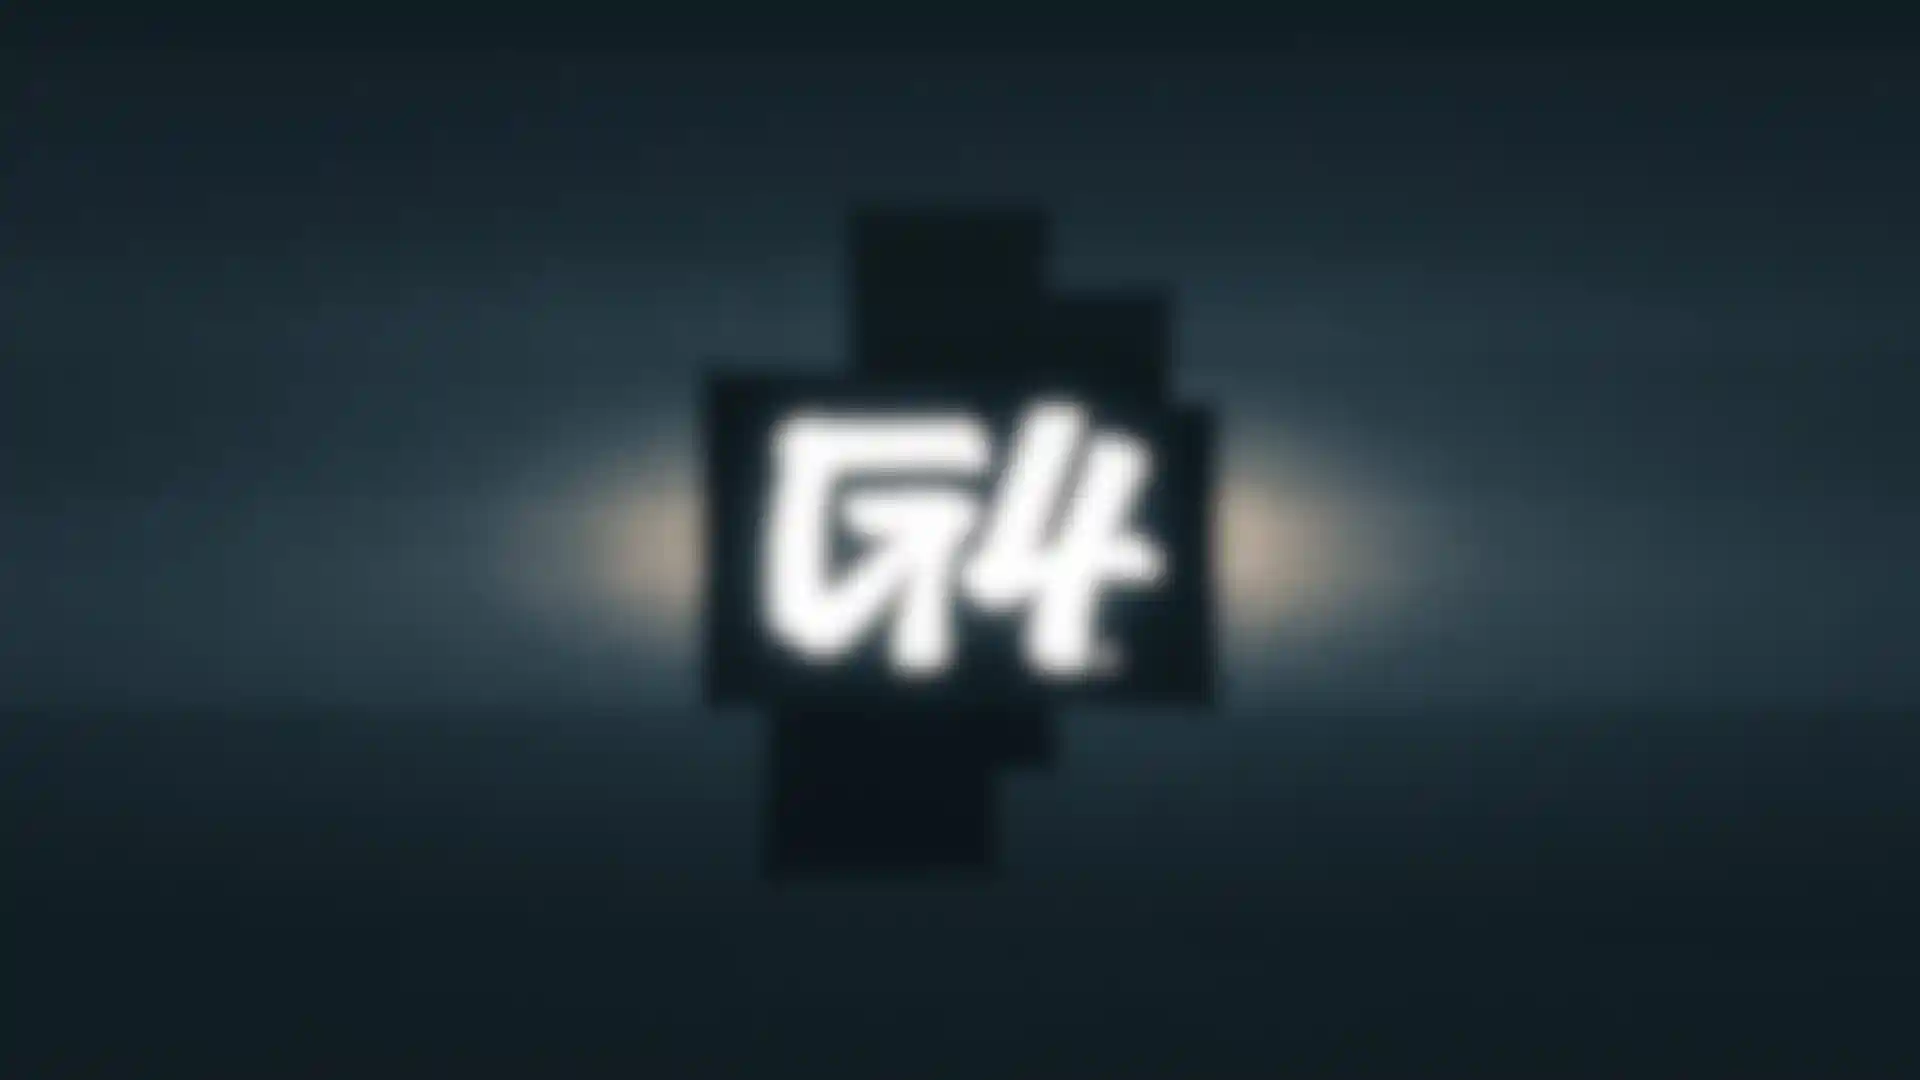 The Return of G4TV